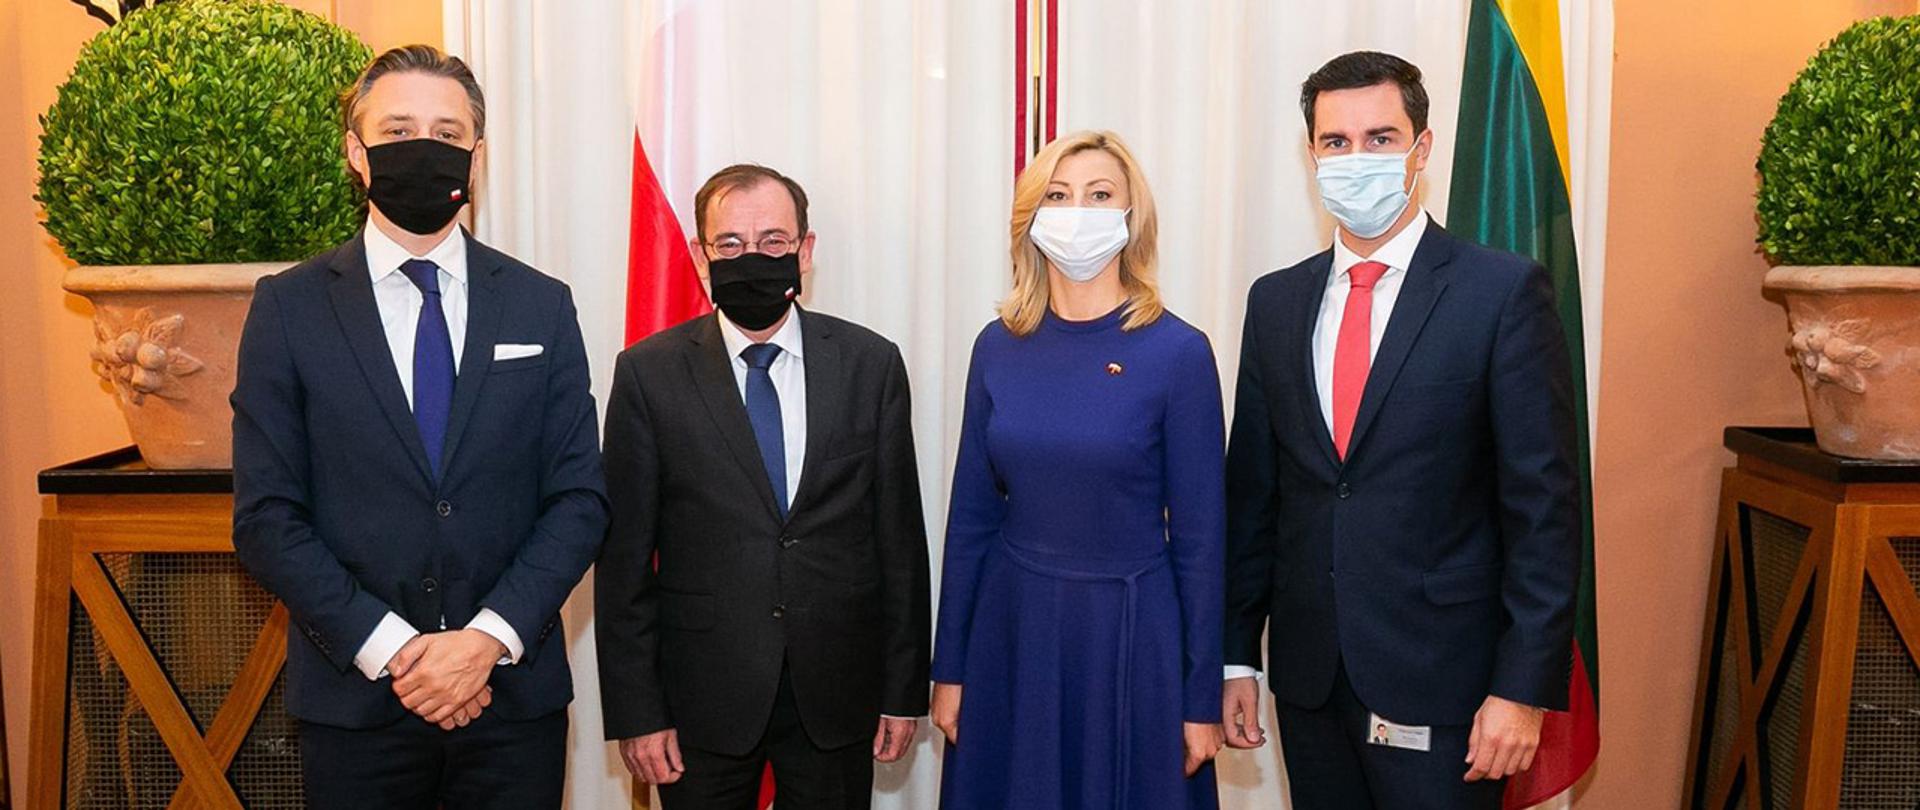 Na zdjęciu: minister Mariusz Kamiński, minister Rita Tamašunienė, wiceminister Bartosz Grodecki oraz kanclerz Valdemar Urban pozują do wspólnego zdjęcia